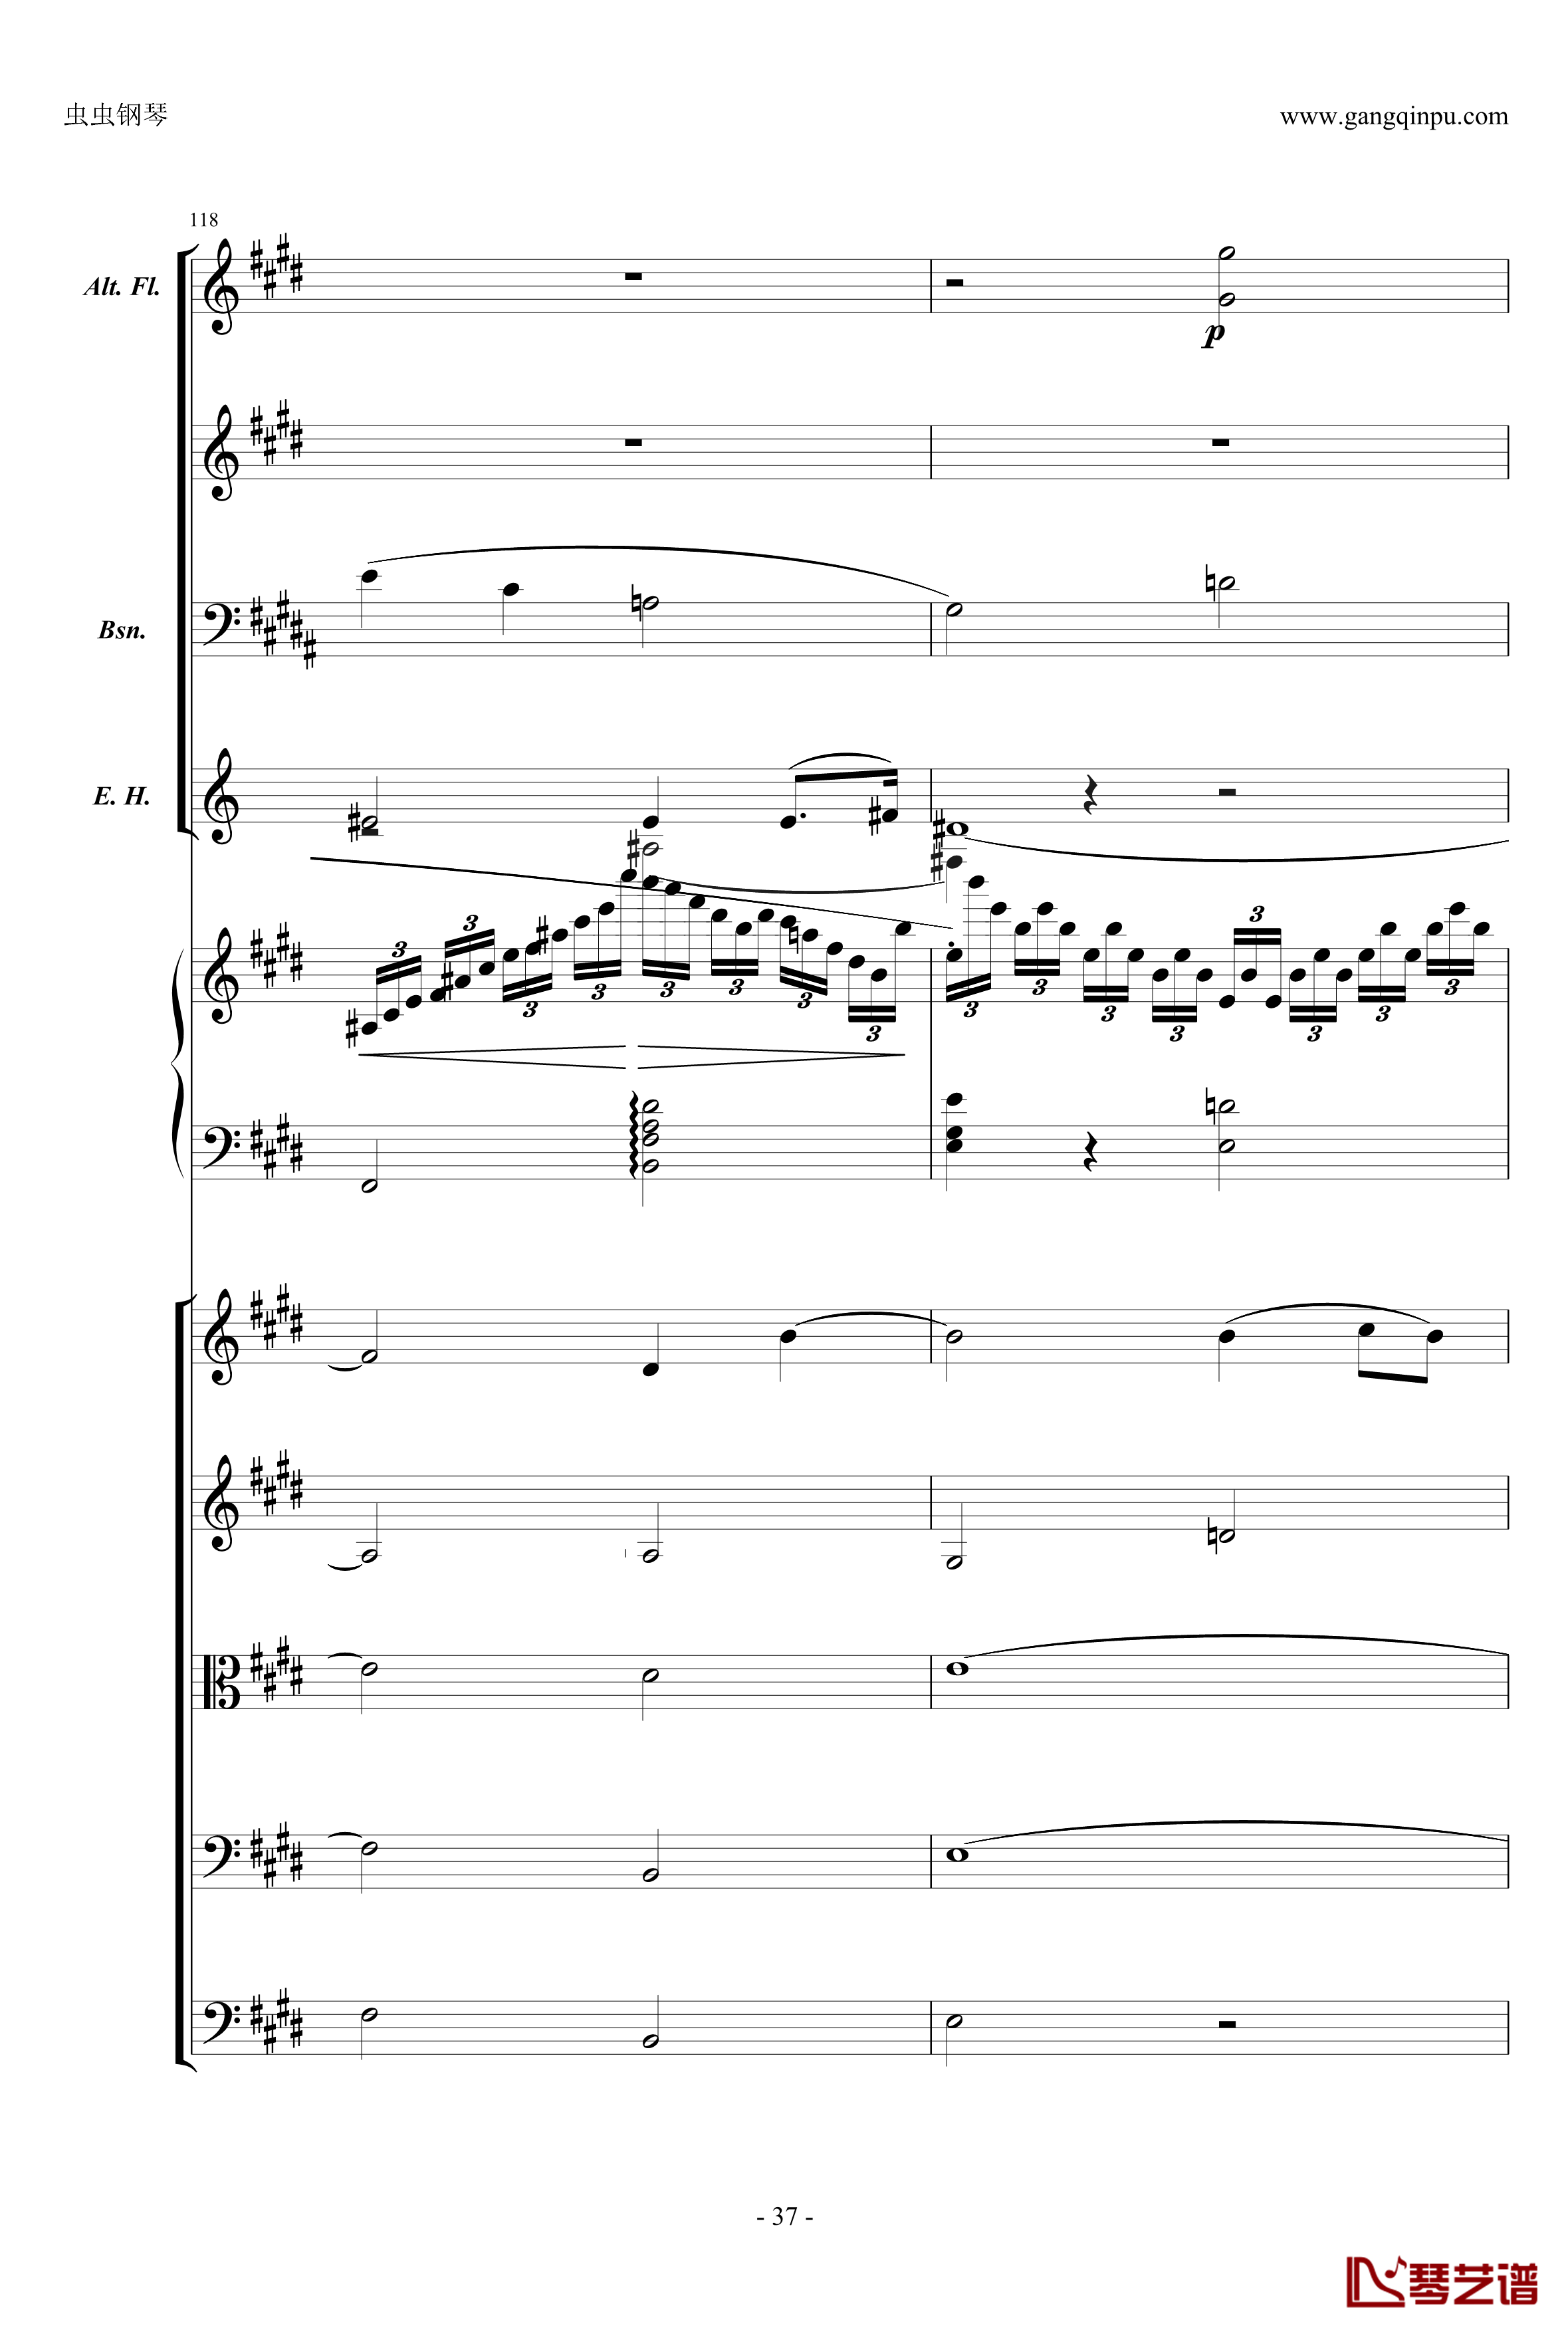 萧邦第一钢琴协奏曲第二乐章钢琴谱-肖邦-chopin37